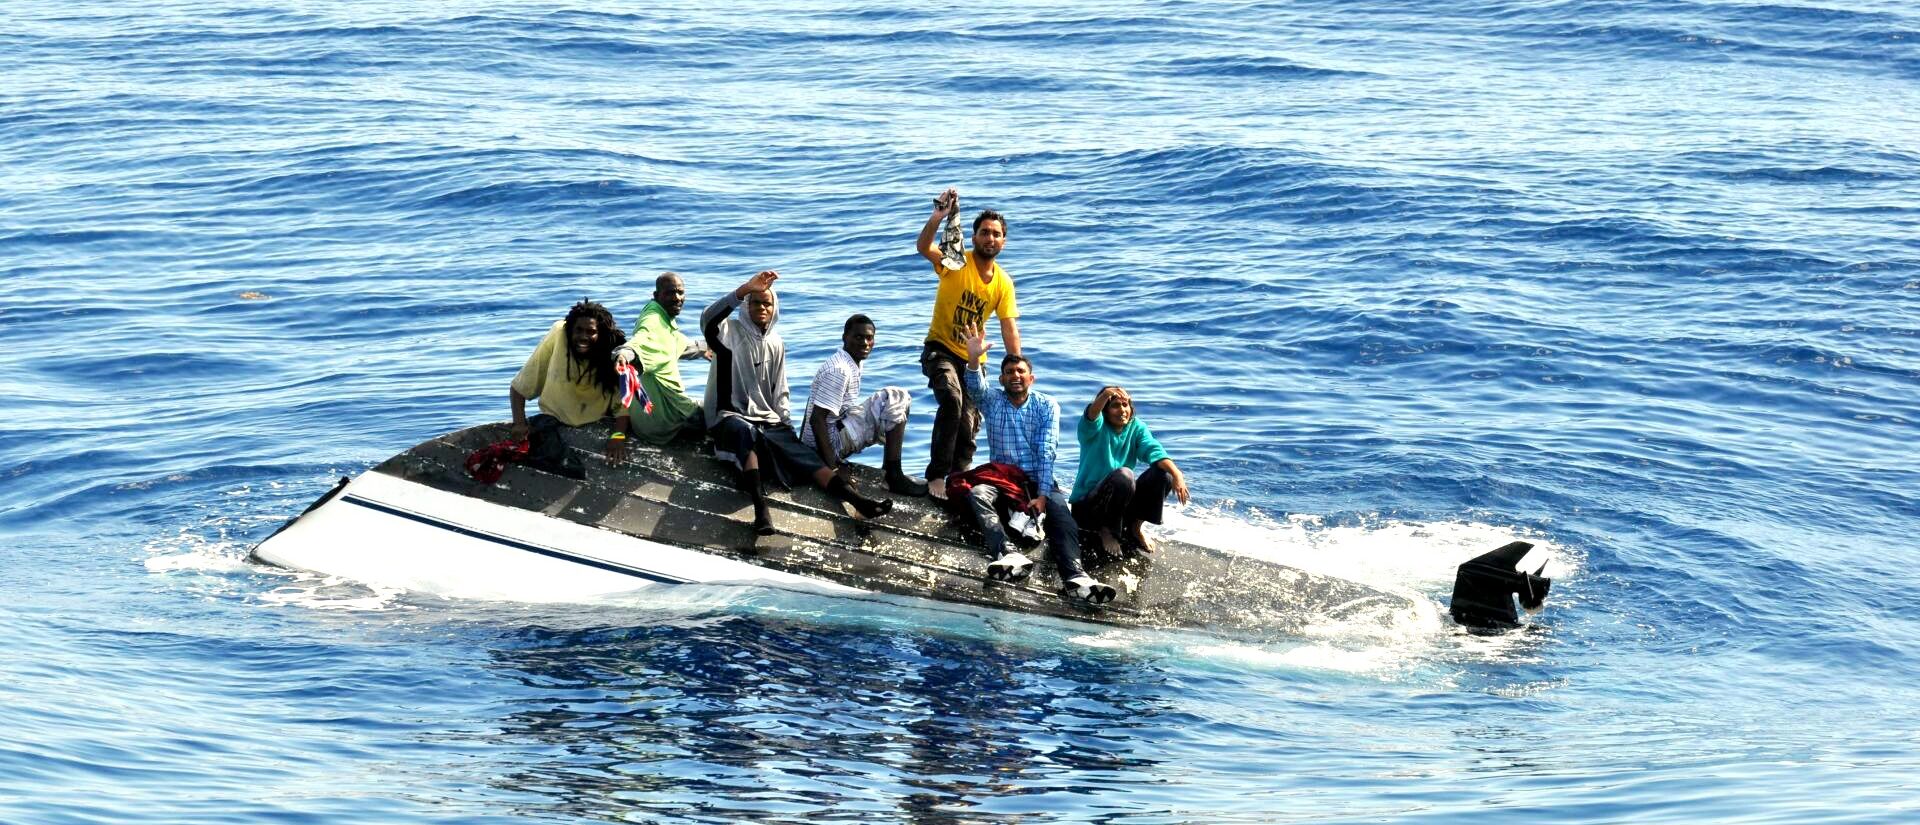 Chaque jour, des migrants risquent leur vie en Méditerranée  | © Coast Guard News/Flickr/CC BY-NC-ND 2.0